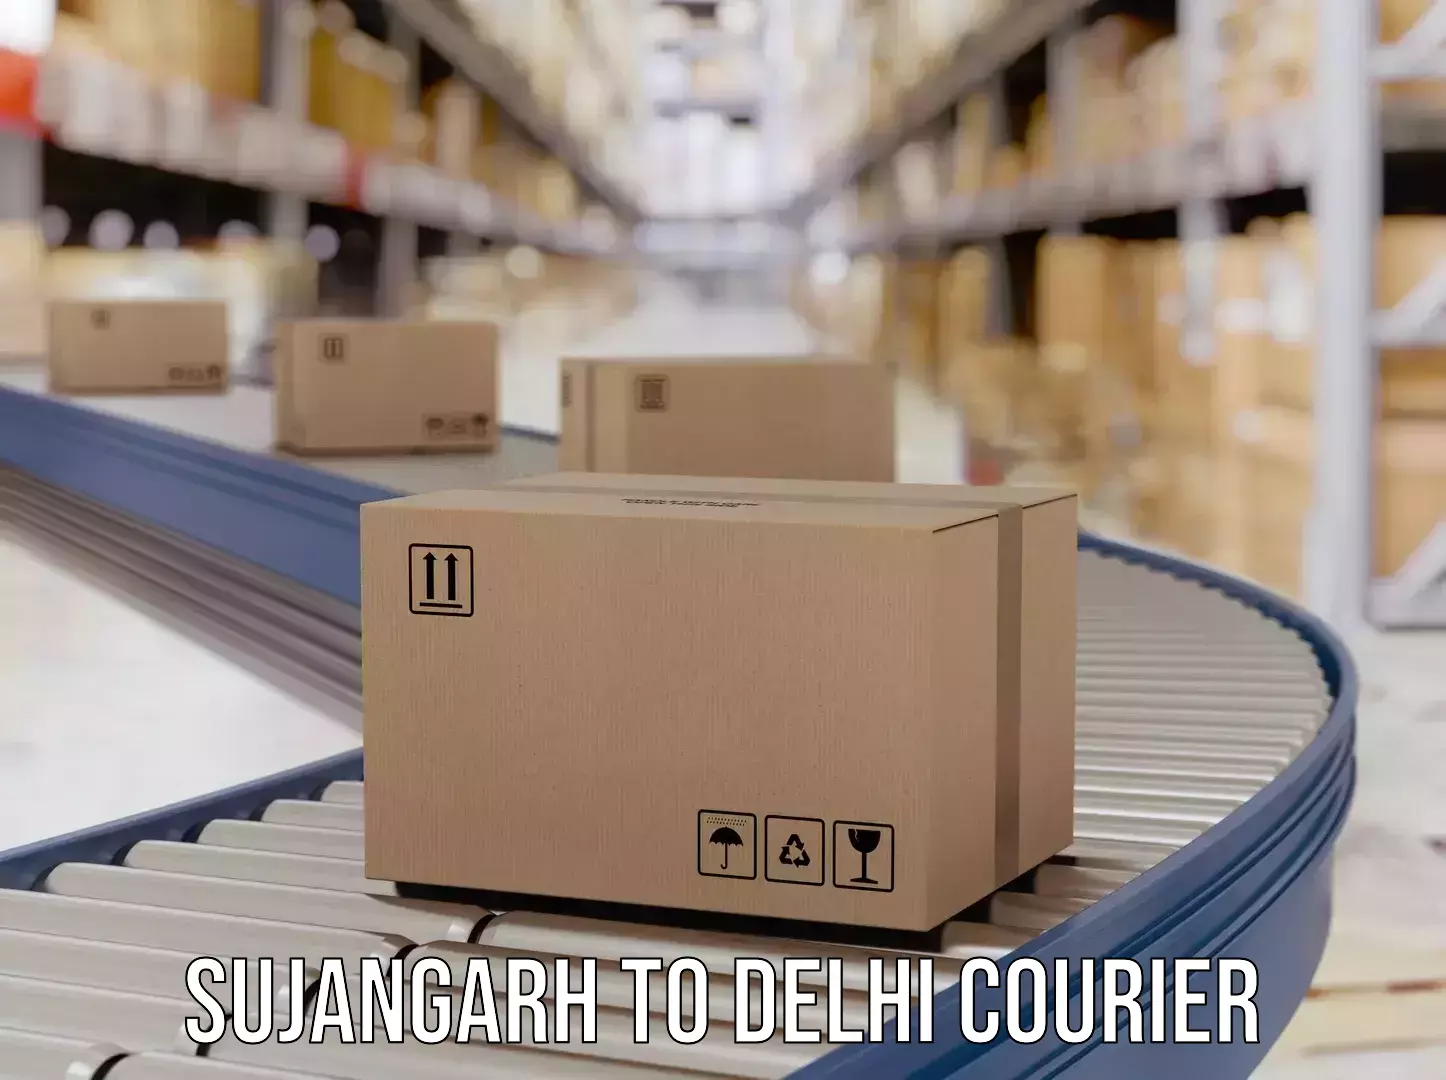 Express courier capabilities Sujangarh to IIT Delhi